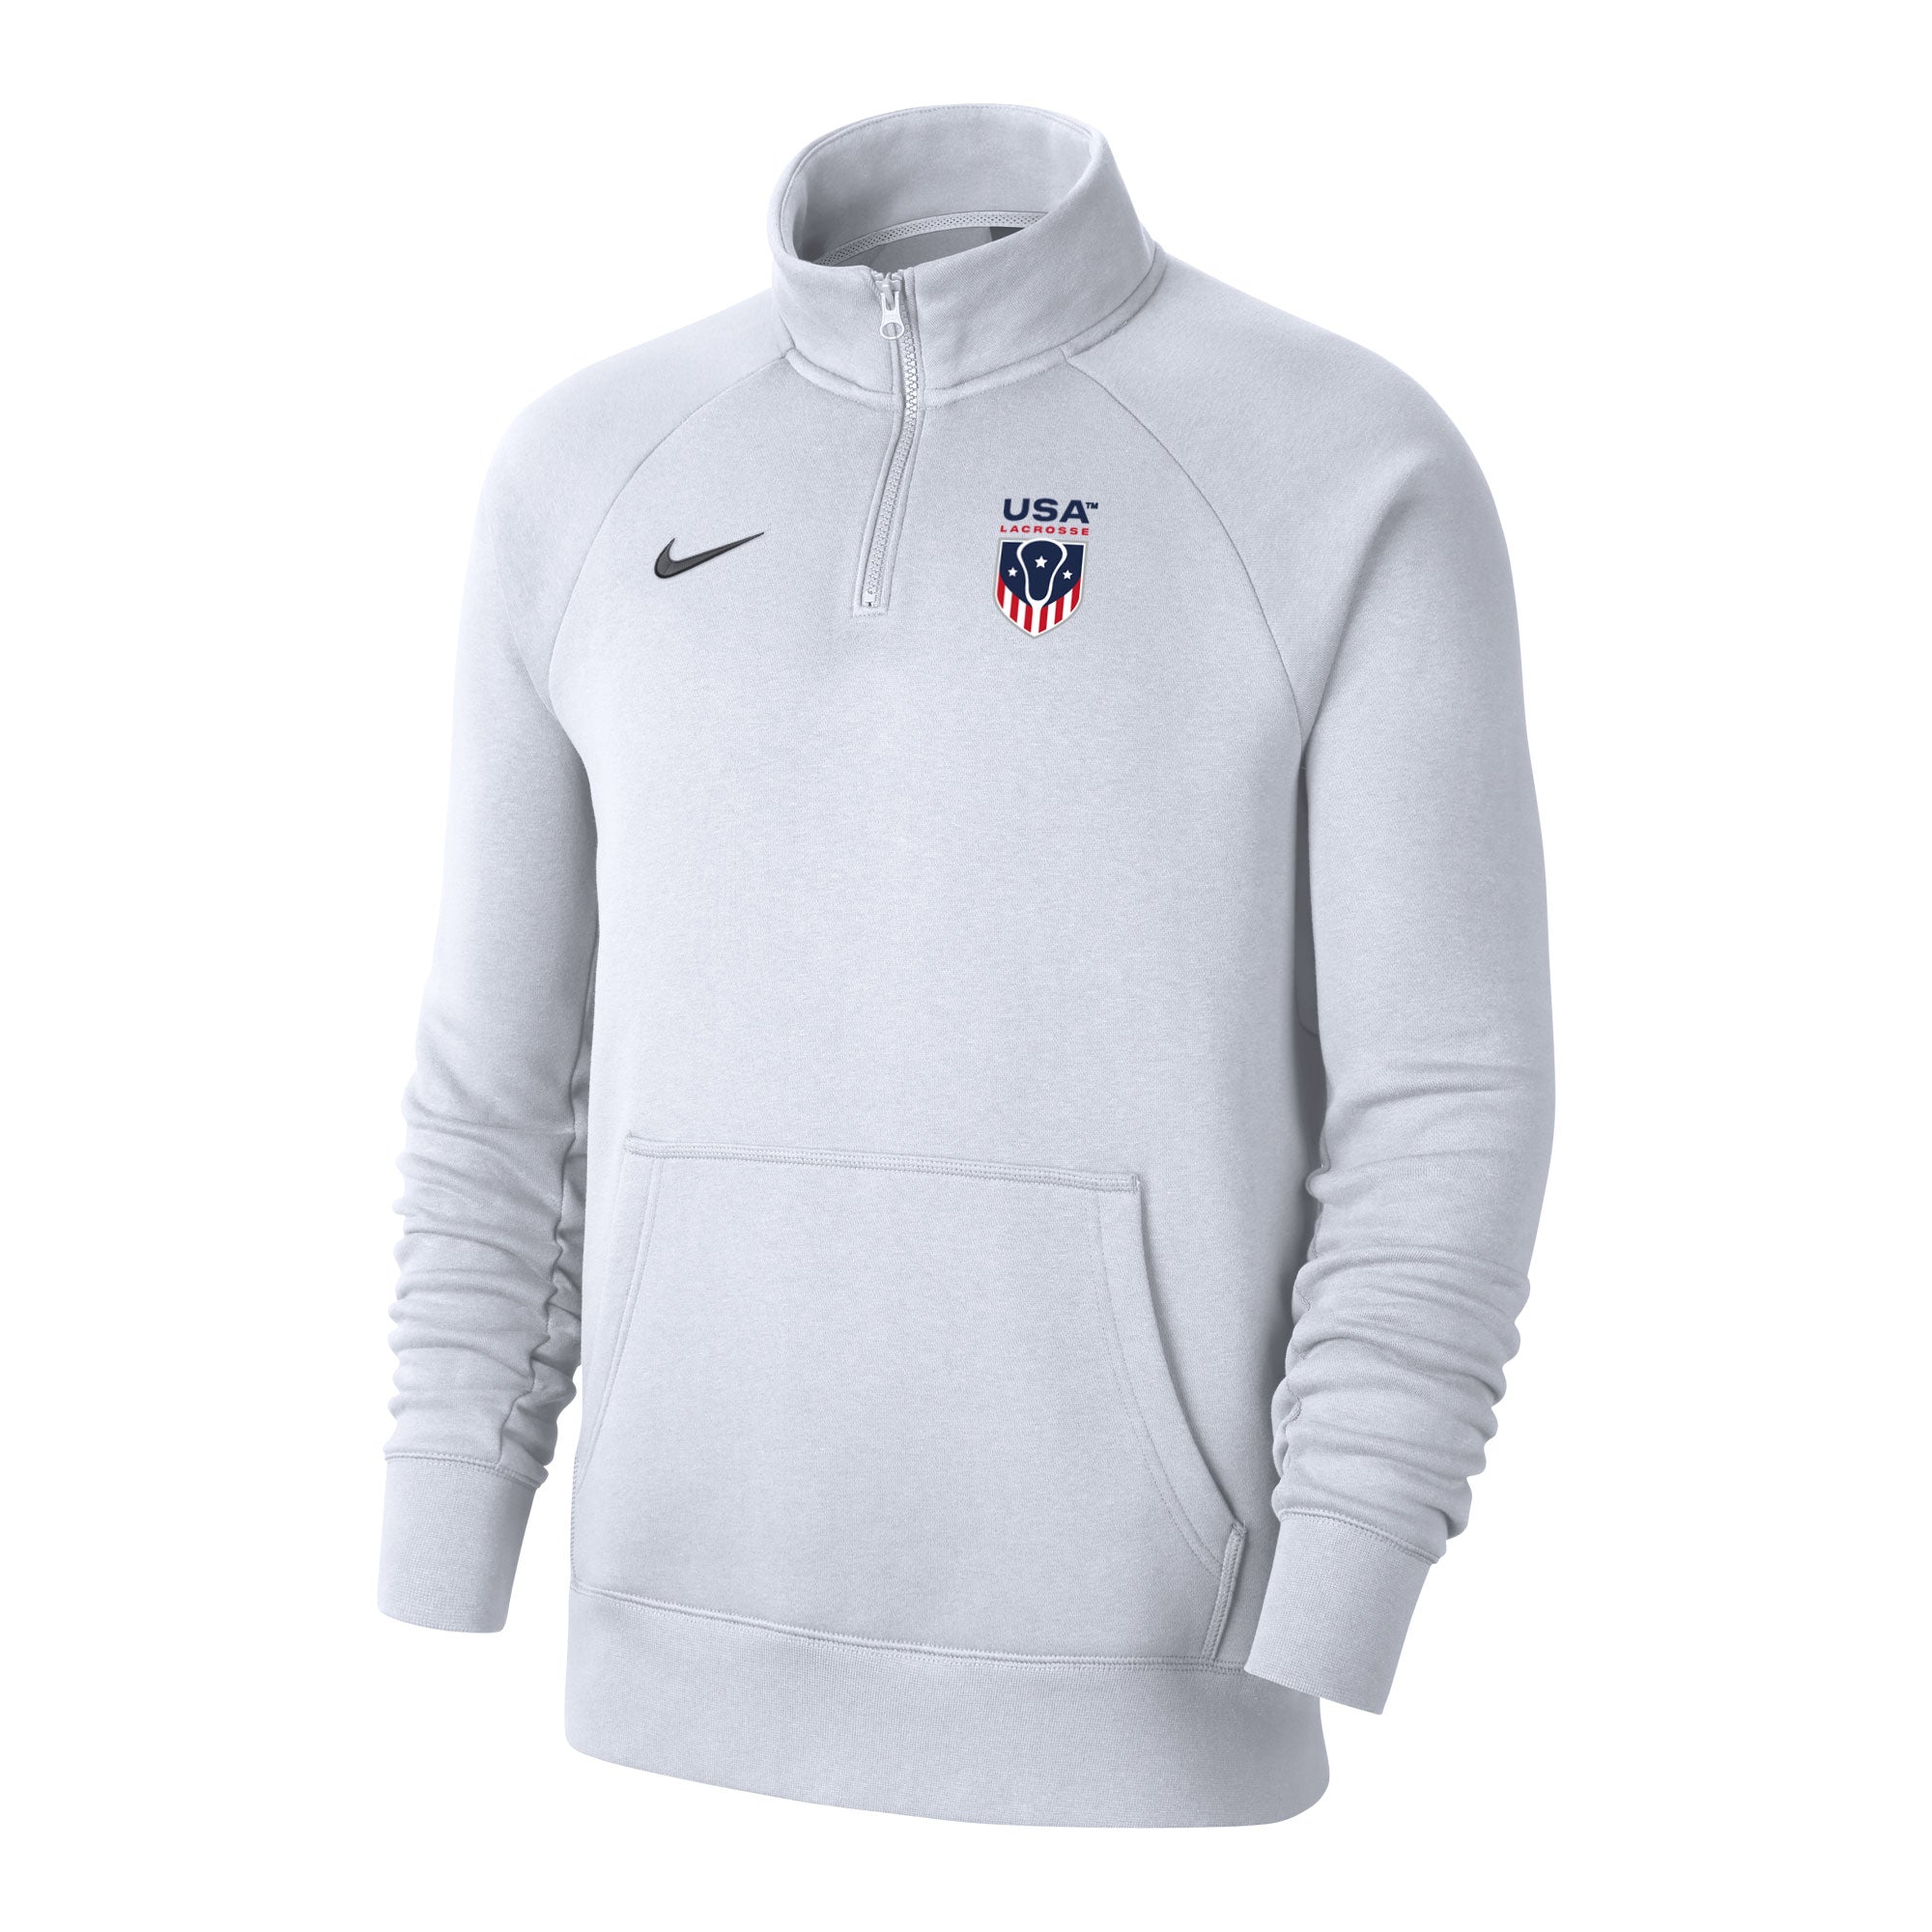 USA Lacrosse Nike Club Fleece 1/4 Zip